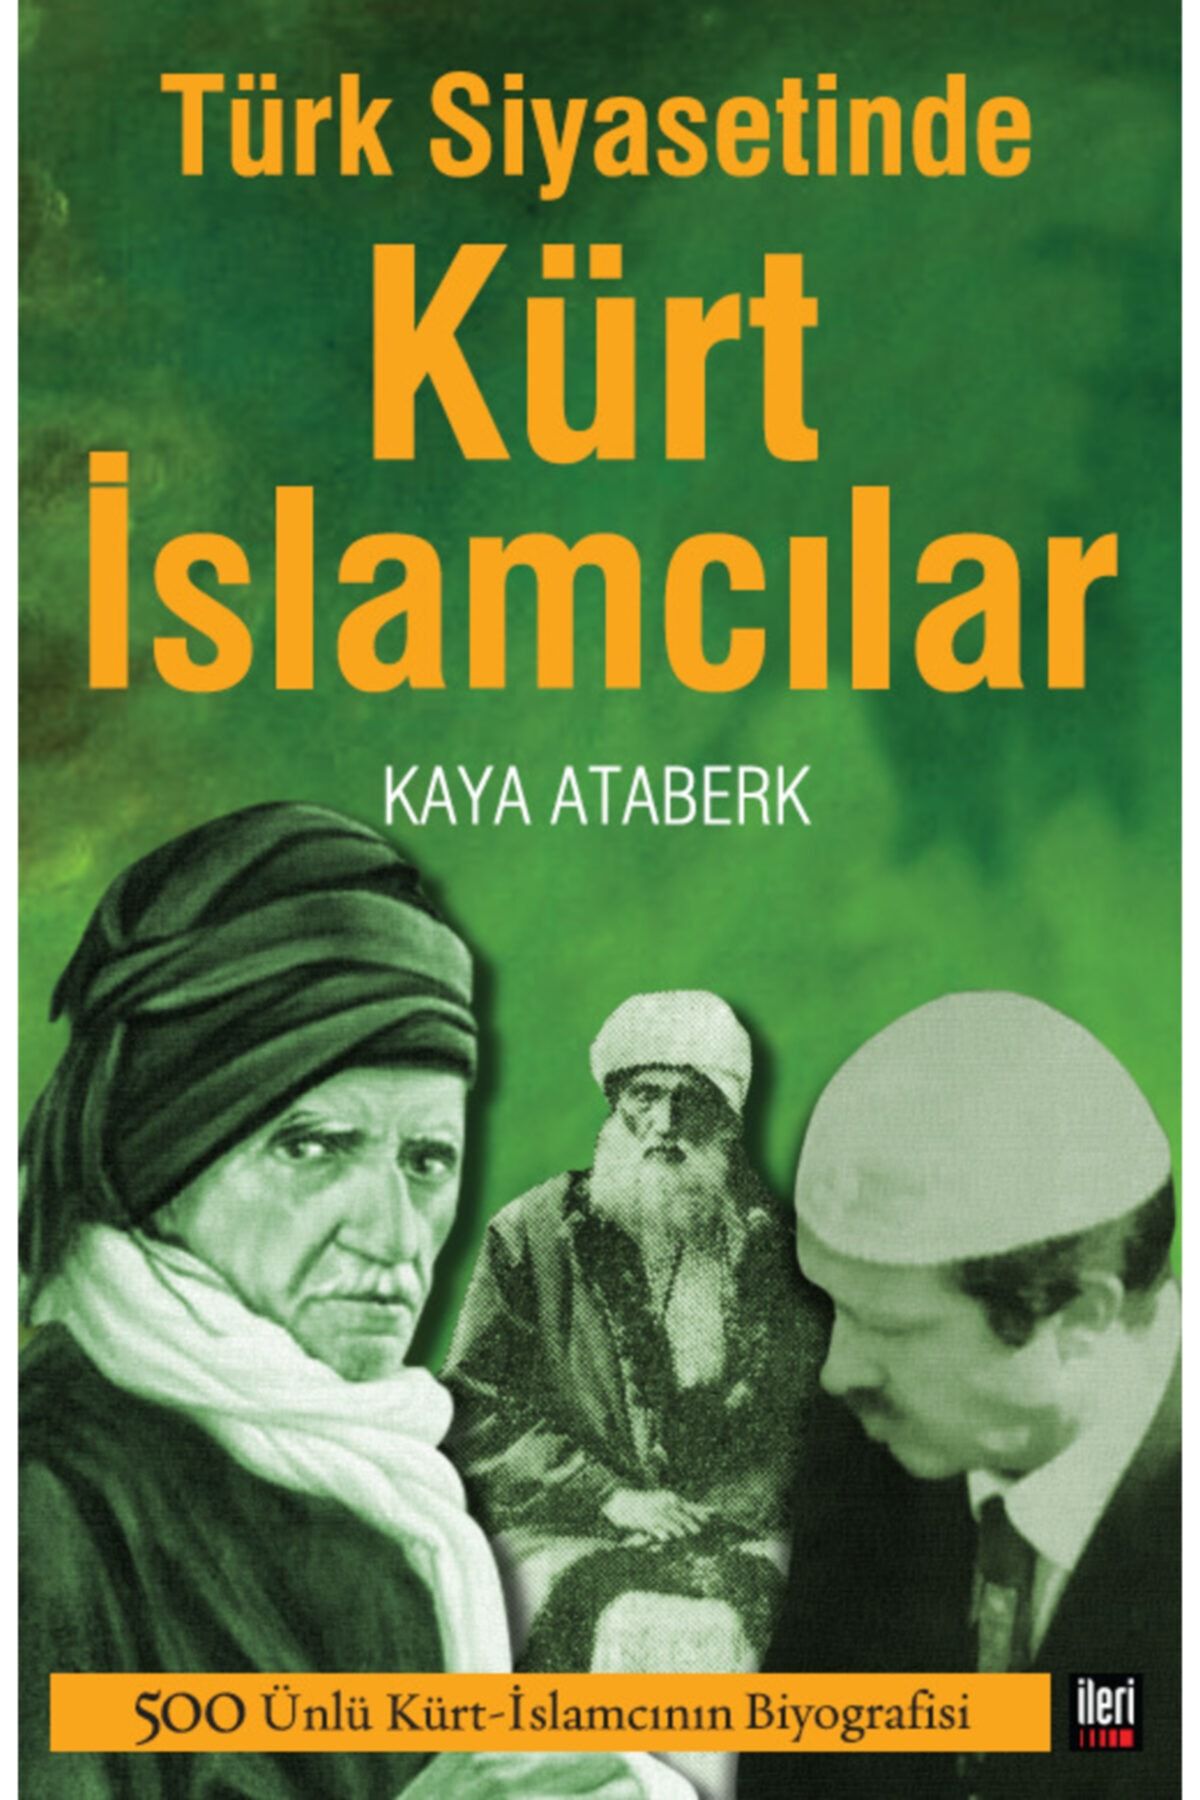 İleri Yayınları Türk Siyasetinde Kürt Islamcılar - Kaya Ataberk